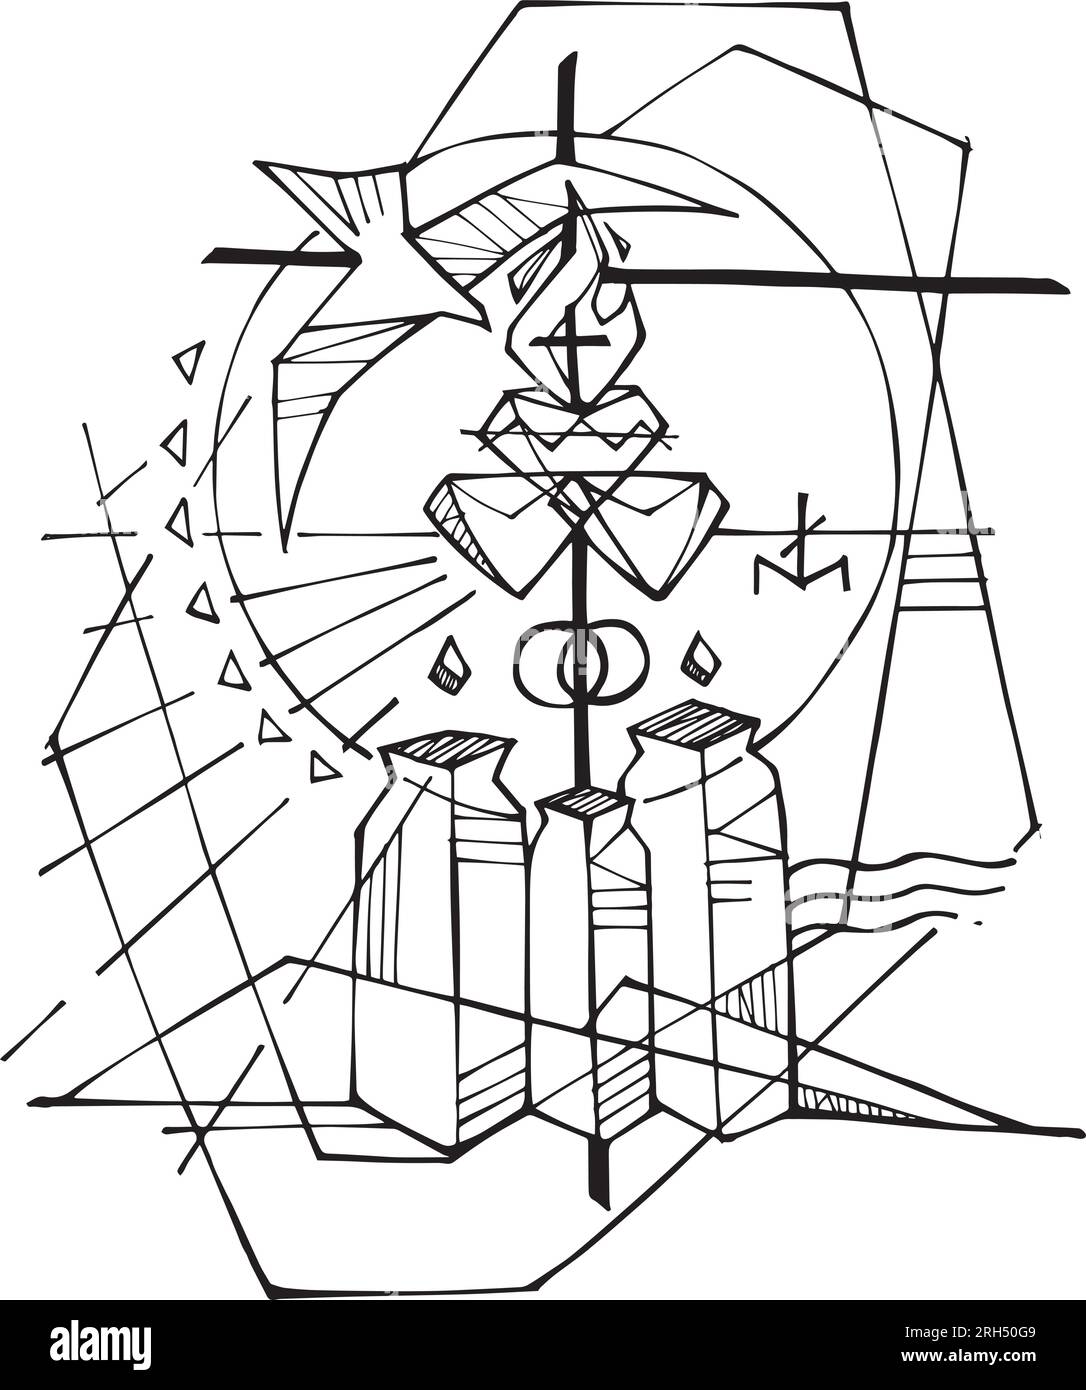 Illustration vectorielle dessinée à la main ou dessin de mariage à Cana Illustration de Vecteur